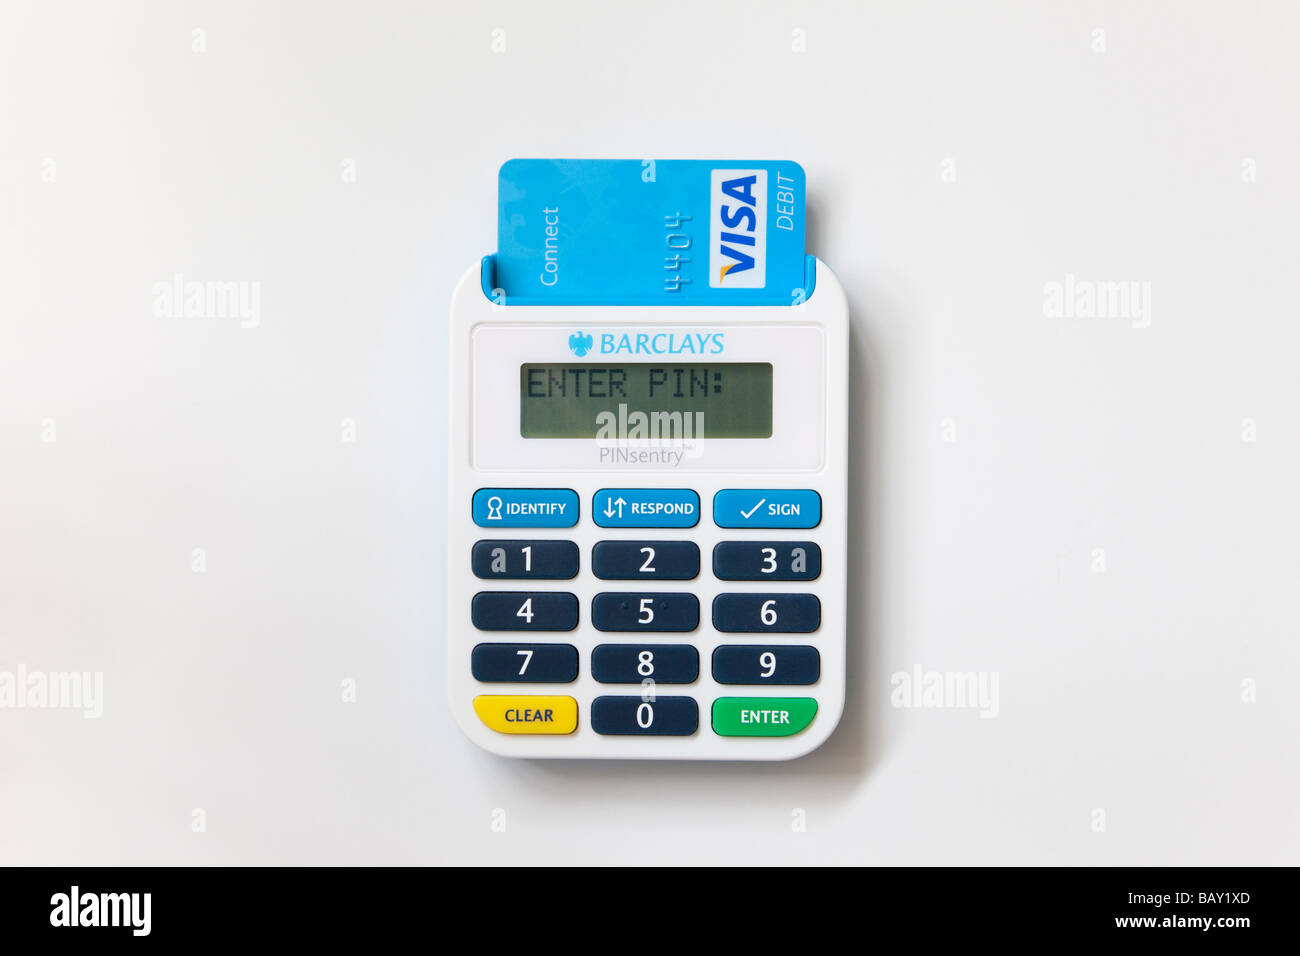 Nahaufnahme von Barclays pinsentry bankcard Reader verbinden Sie mit Visa debit card eingefügt. England Großbritannien Stockfoto